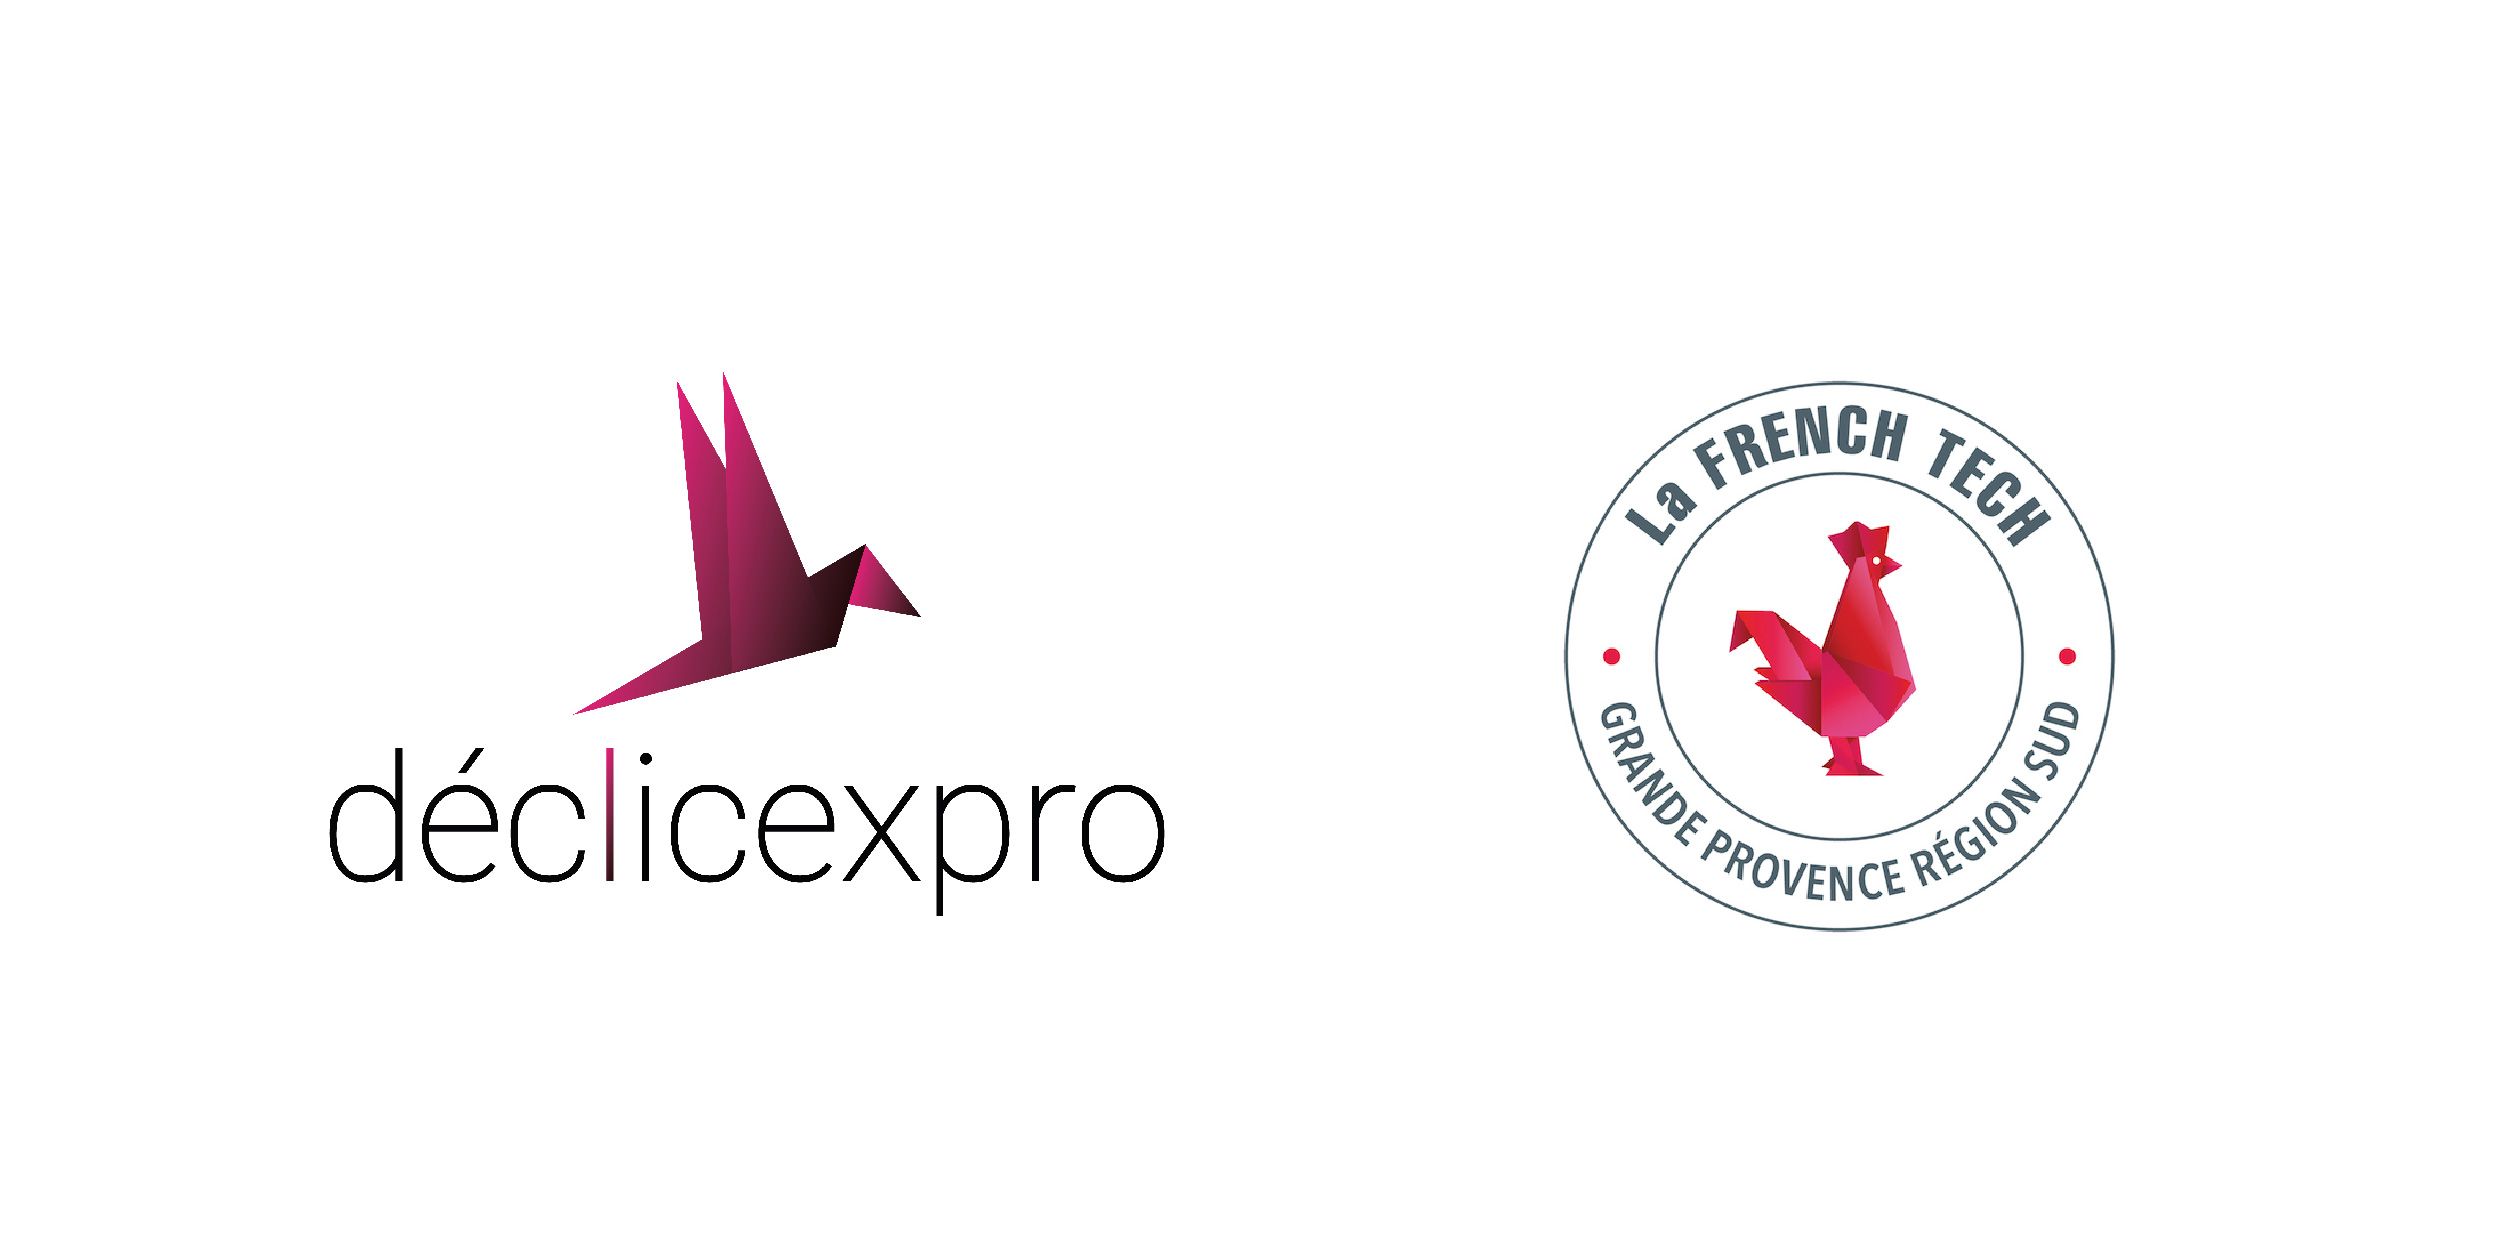 La French Tech, Declicexpro rejoint le mouvement !